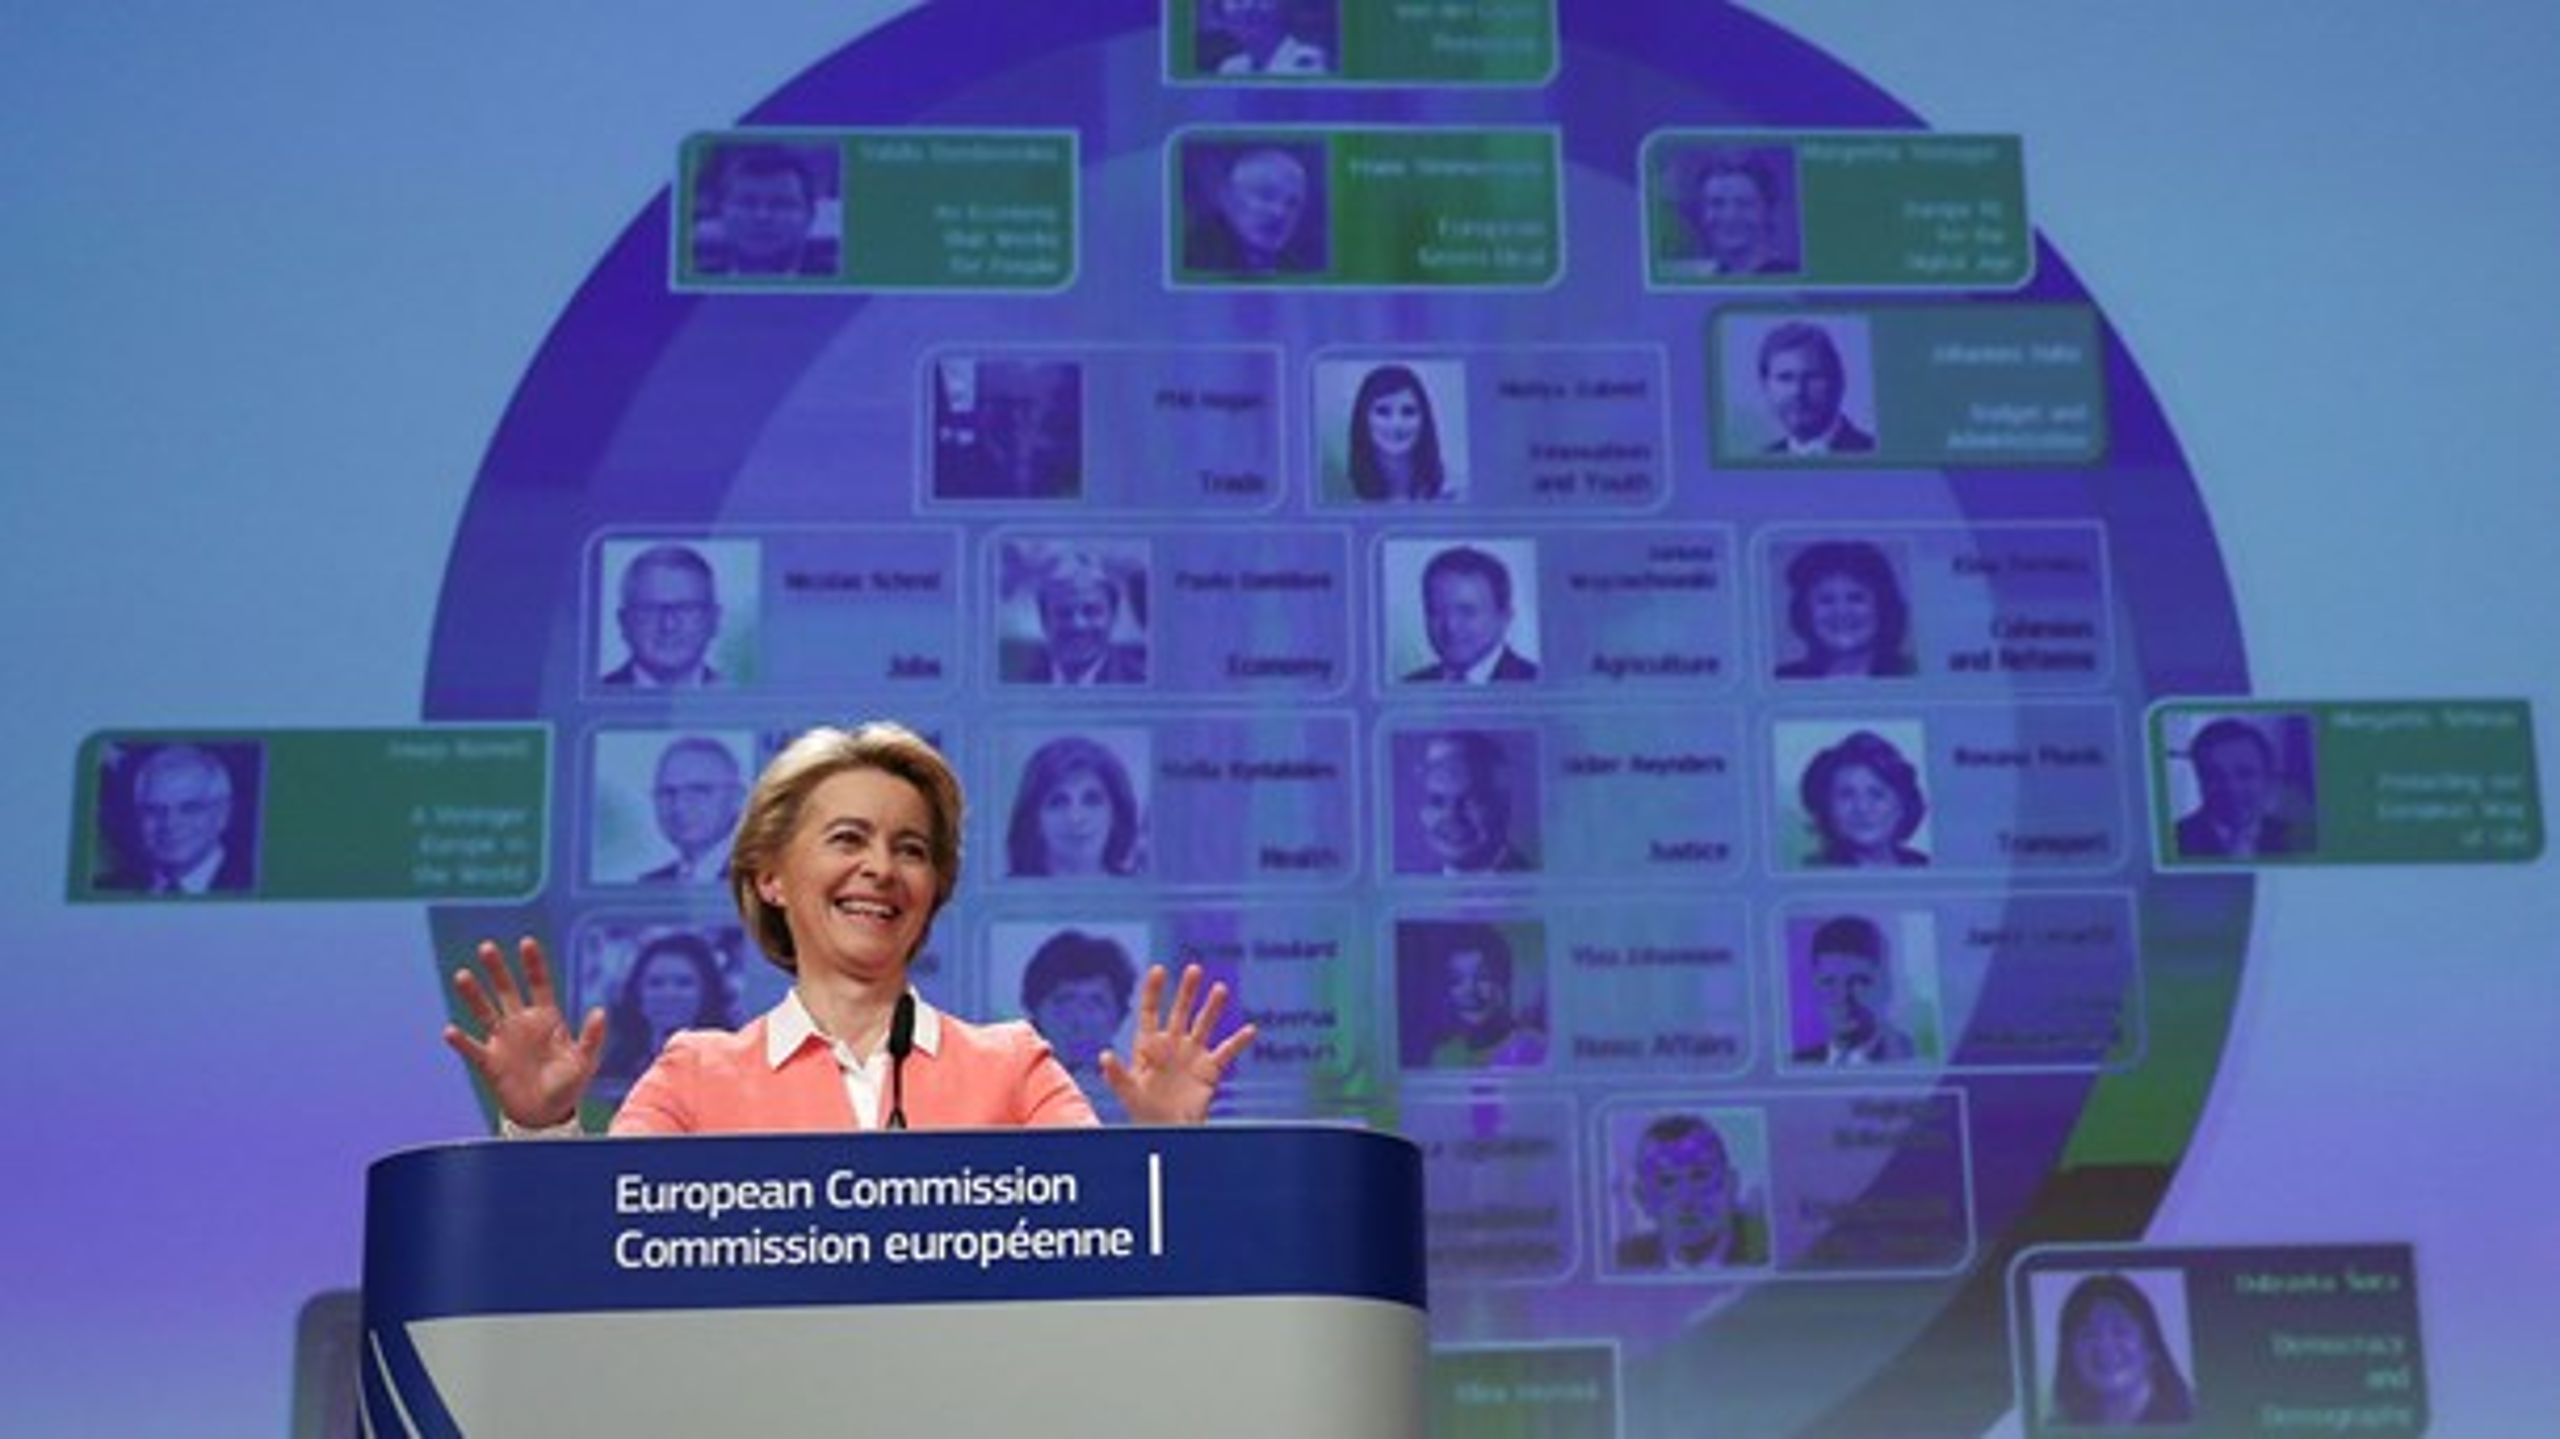 For tre uger&nbsp;siden præsenterede formanden for EU-Kommissionen, Ursula von der Leyen, sit nye hold af kommissærer og deres arbejdsopgaver.